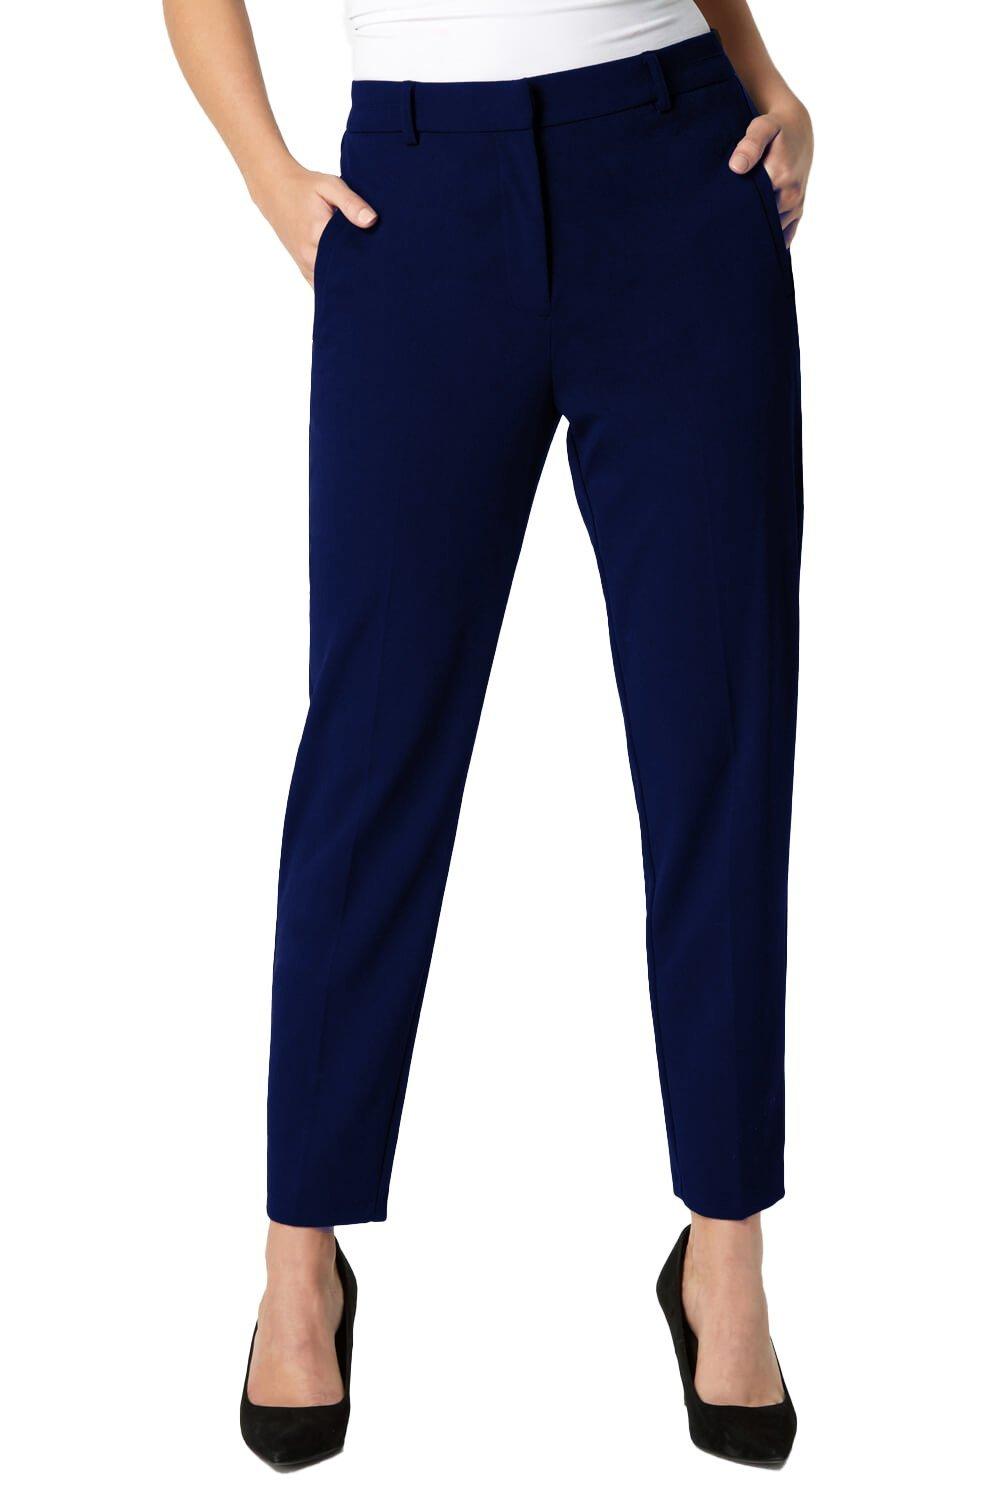 Длинные прямые эластичные брюки Roman, синий фото